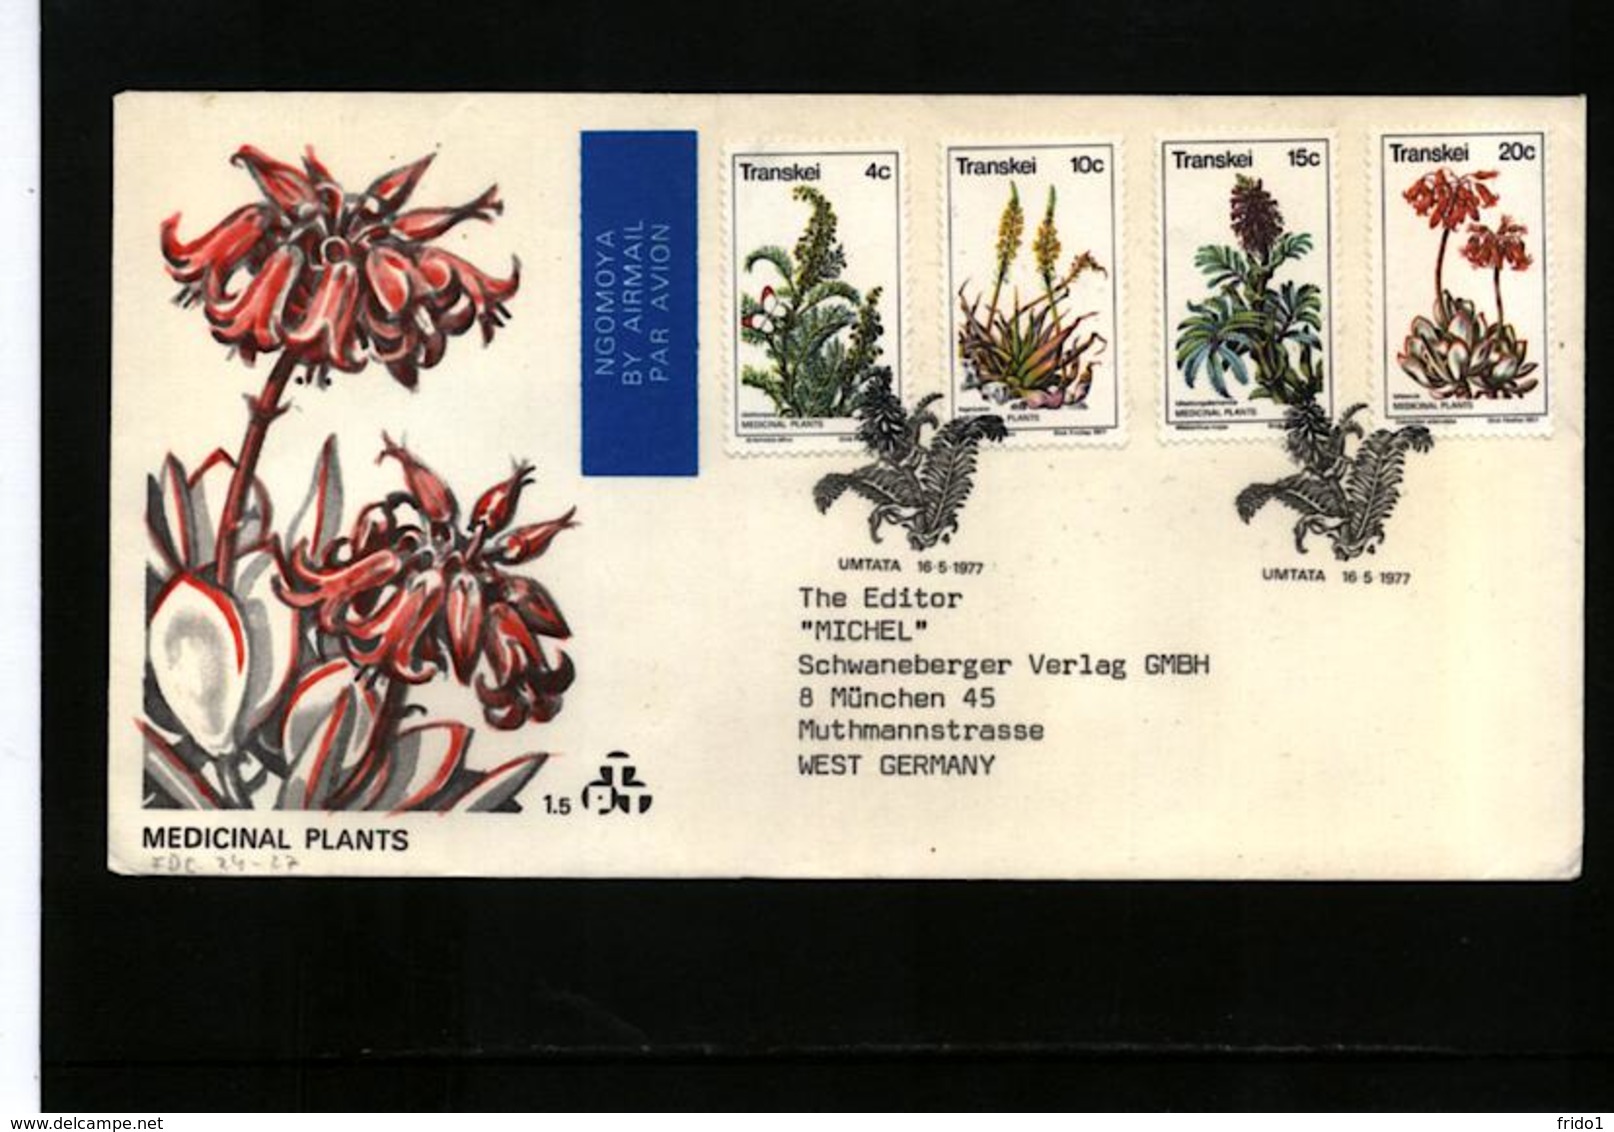 Transkei 1977 Medicinal Plants FDC - Heilpflanzen